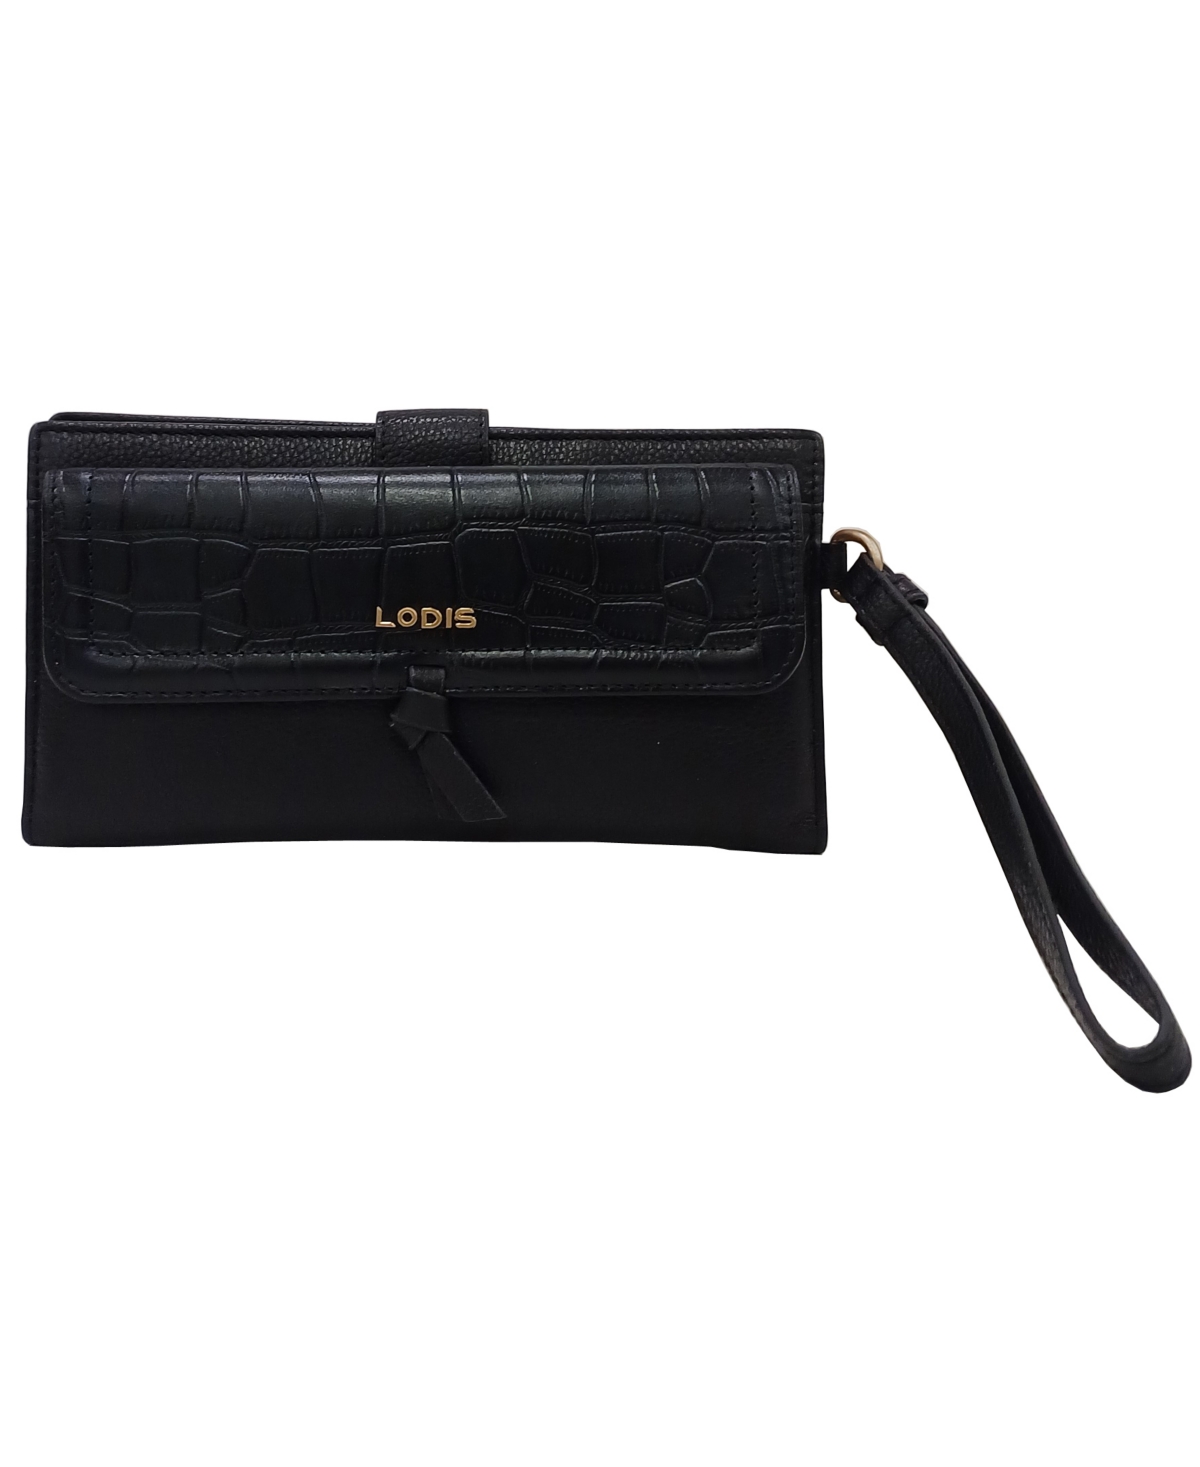 Lodis Women's Elia Croco 2 In 1 Wristlet Wallet In Black